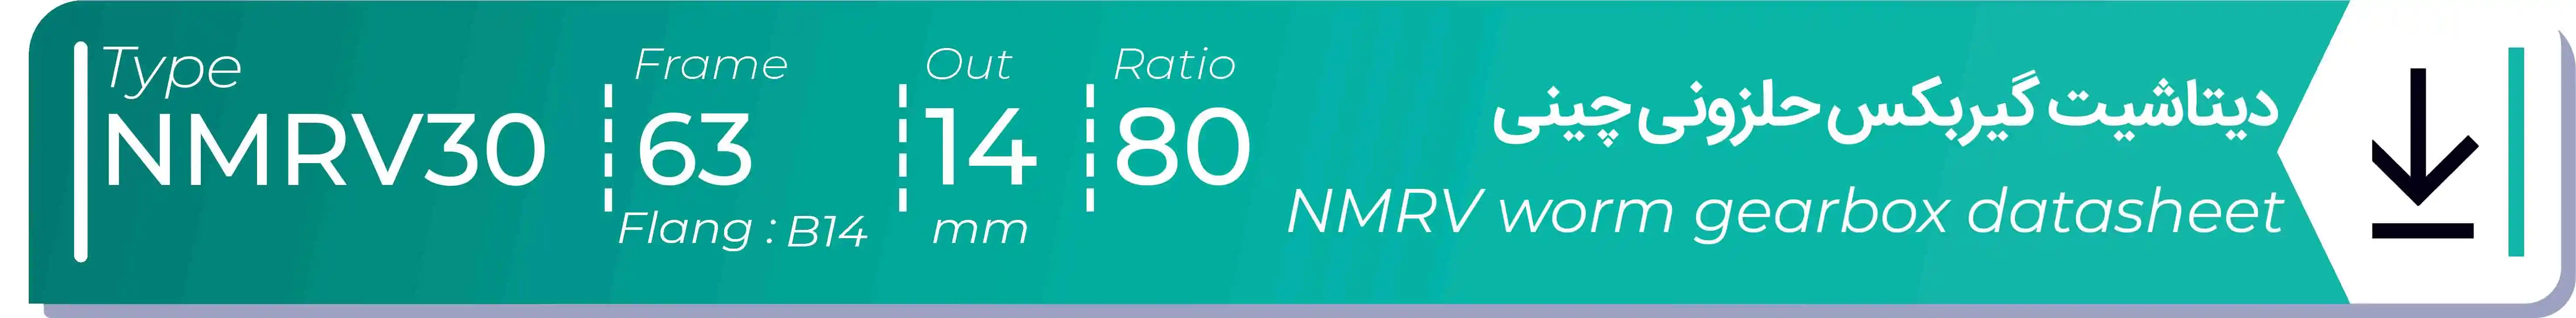  دیتاشیت و مشخصات فنی گیربکس حلزونی چینی   NMRV30  -  با خروجی 14- میلی متر و نسبت80